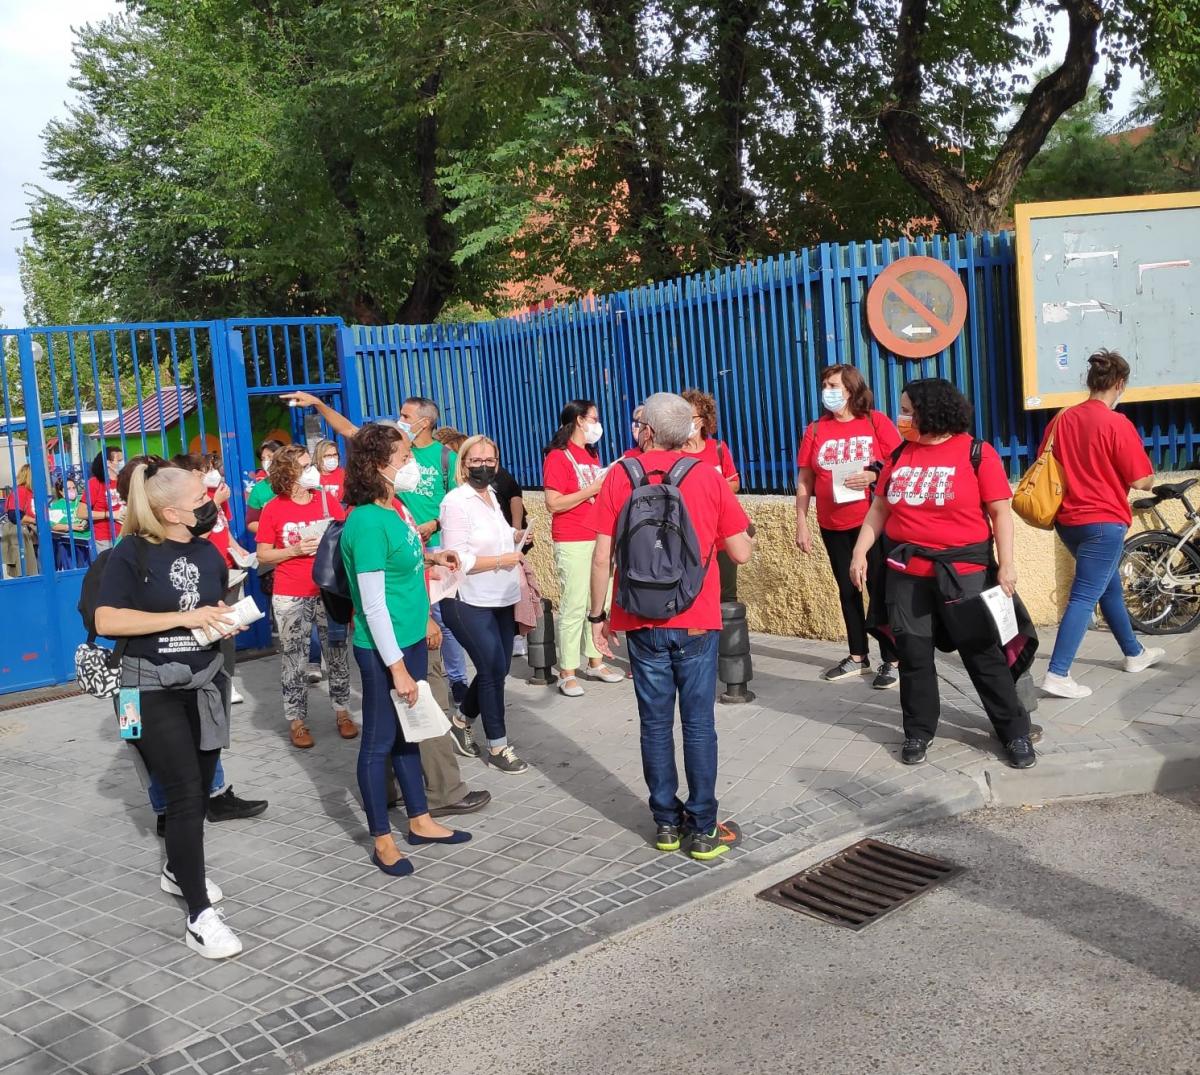 Trabajadoras y trabajadores municipales de Escuelas Infantiles y Casas de Niños y Niñas de Leganés, informando a las familias de un centro educativo junto a miembros de la CUT (CCOO y UGT).